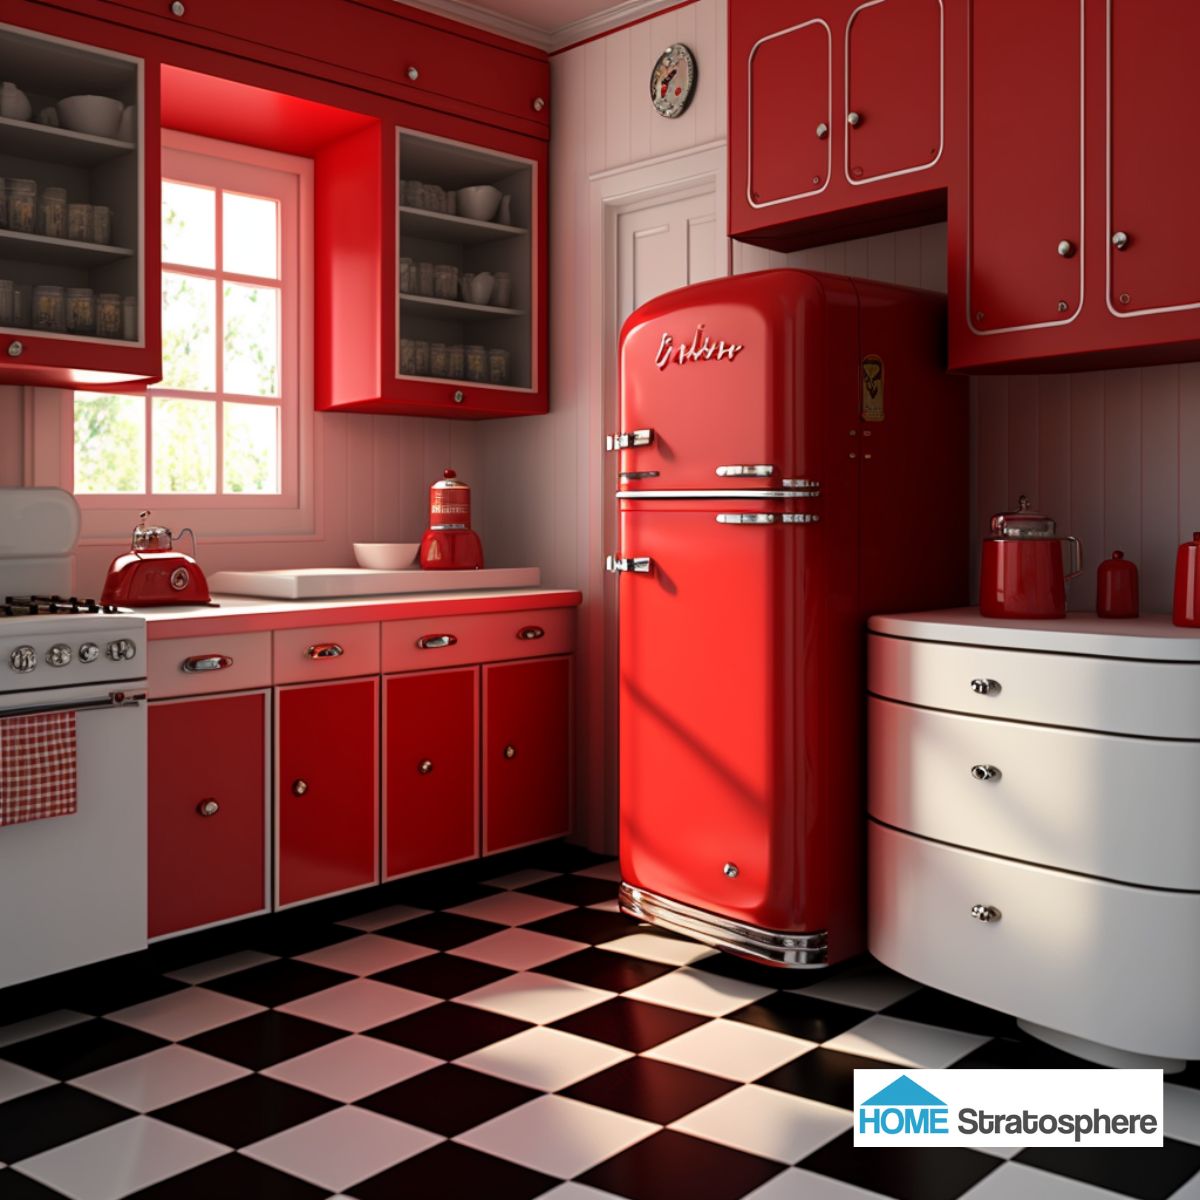 充满活力的红色加上金属和白色的点缀，让这个厨房看起来像一个机械工具箱。复古的冰箱与鲜亮的深红色很搭，就连地板上的黑白格子也很搭。我一开始并不是特别喜欢这个，但后来渐渐喜欢上了它。